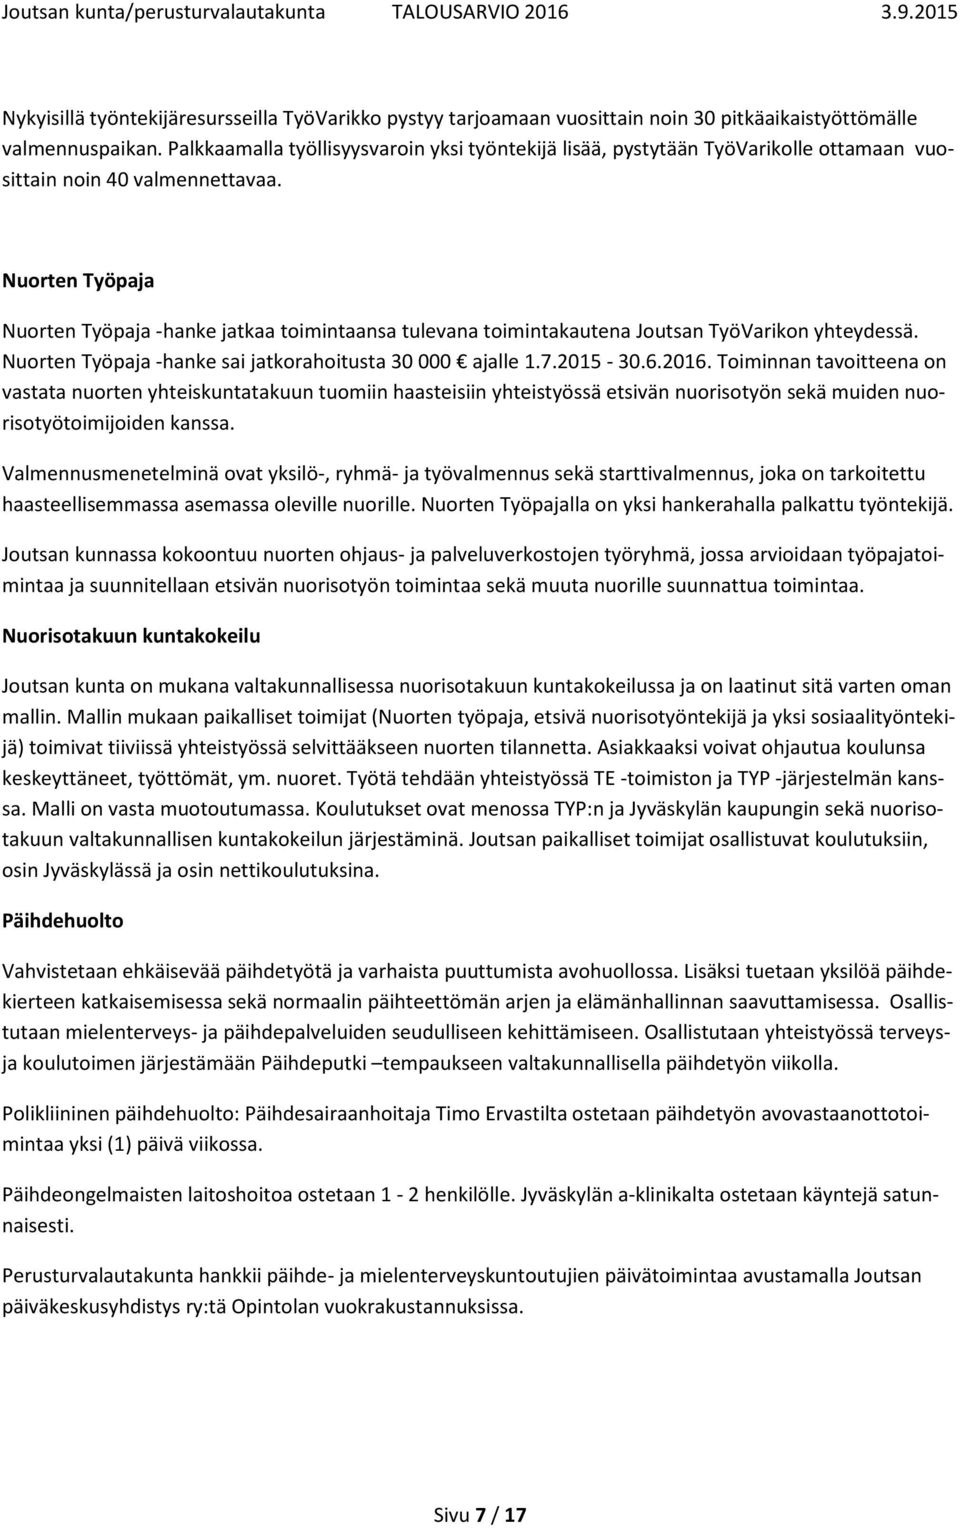 Nuorten Työpaja Nuorten Työpaja -hanke jatkaa toimintaansa tulevana toimintakautena Joutsan TyöVarikon yhteydessä. Nuorten Työpaja -hanke sai jatkorahoitusta 30 000 ajalle 1.7.2015-30.6.2016.